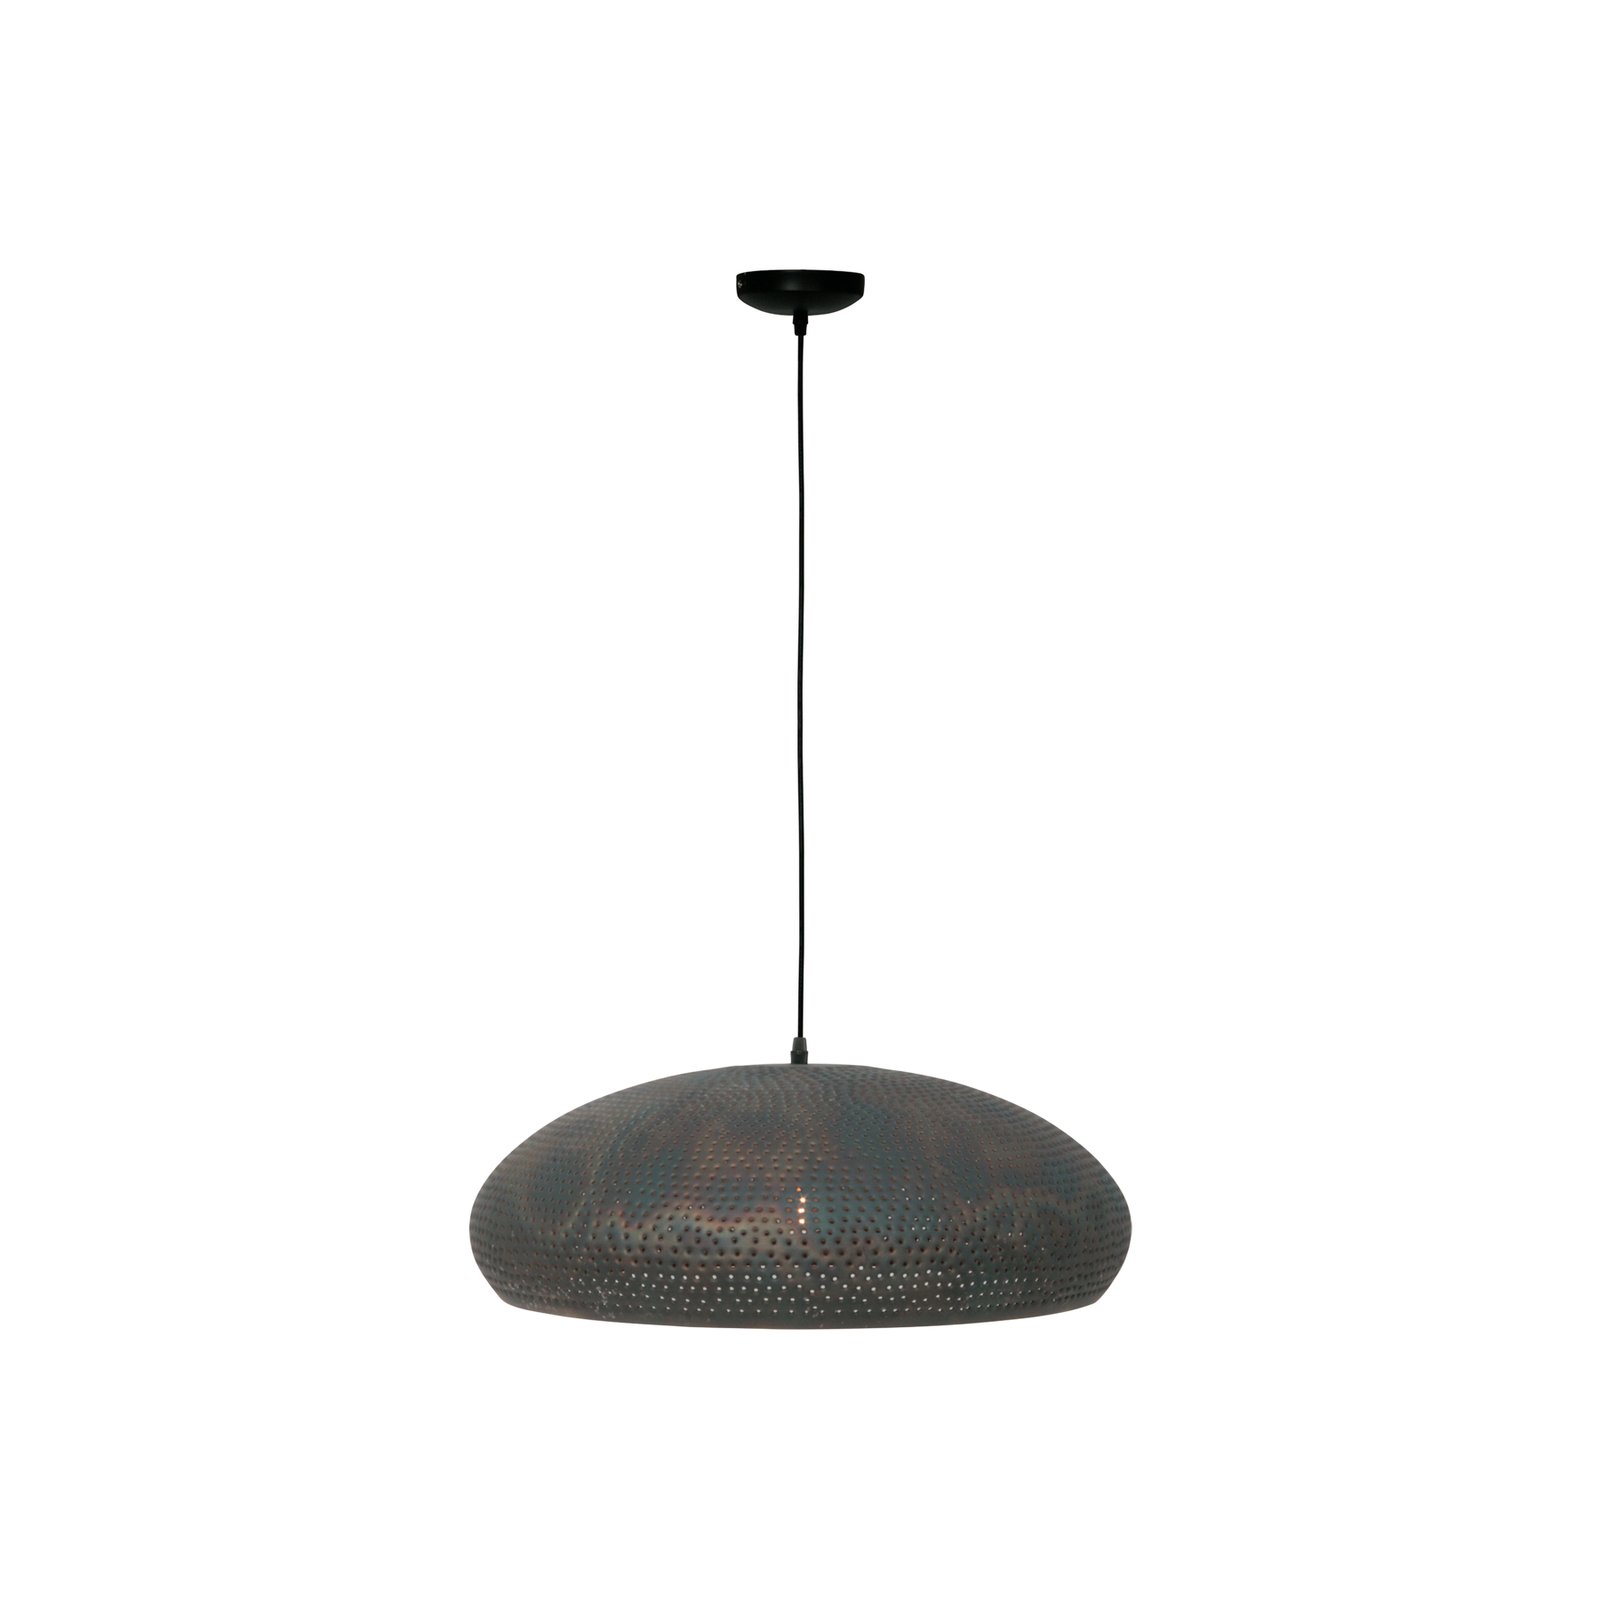 Fori hanging light, Ø 53 cm, brown, metal